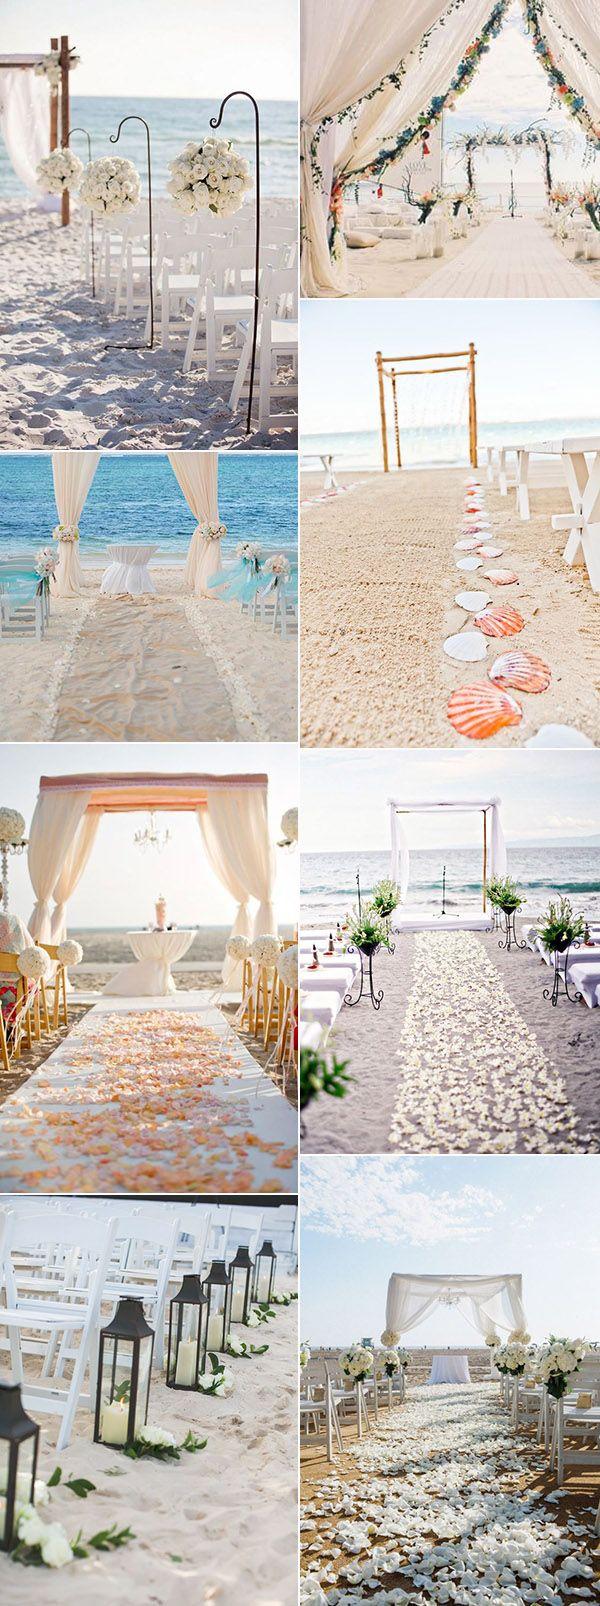 Wedding - 30 Brilliant Beach Wedding Ideas For 2017 Trends